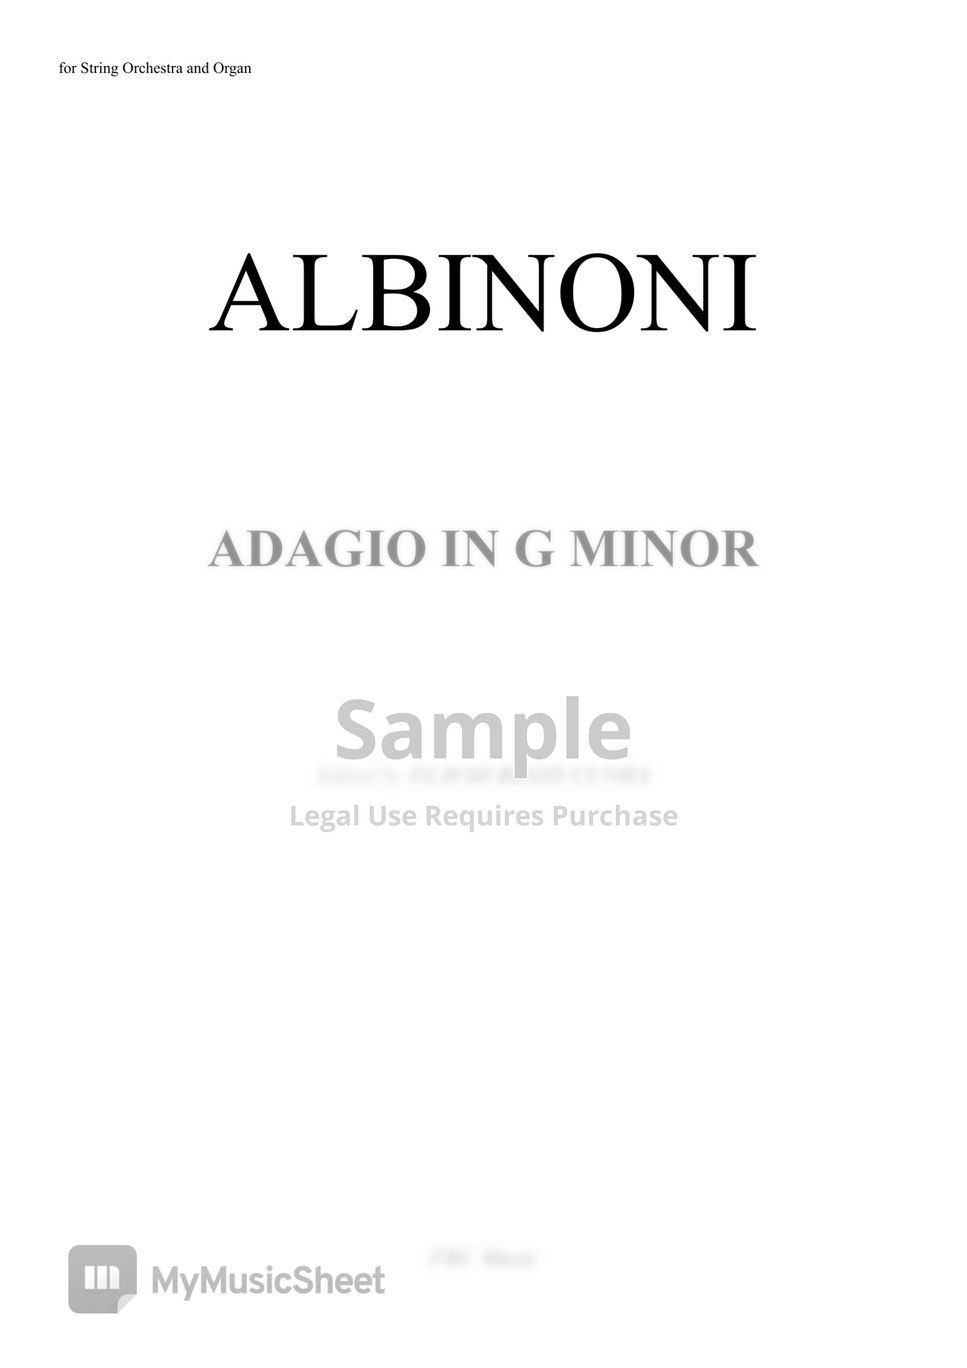 Albinoni | Giazotto - Adagio in G minor (Score and Parts) by Flavio Regis Cunha